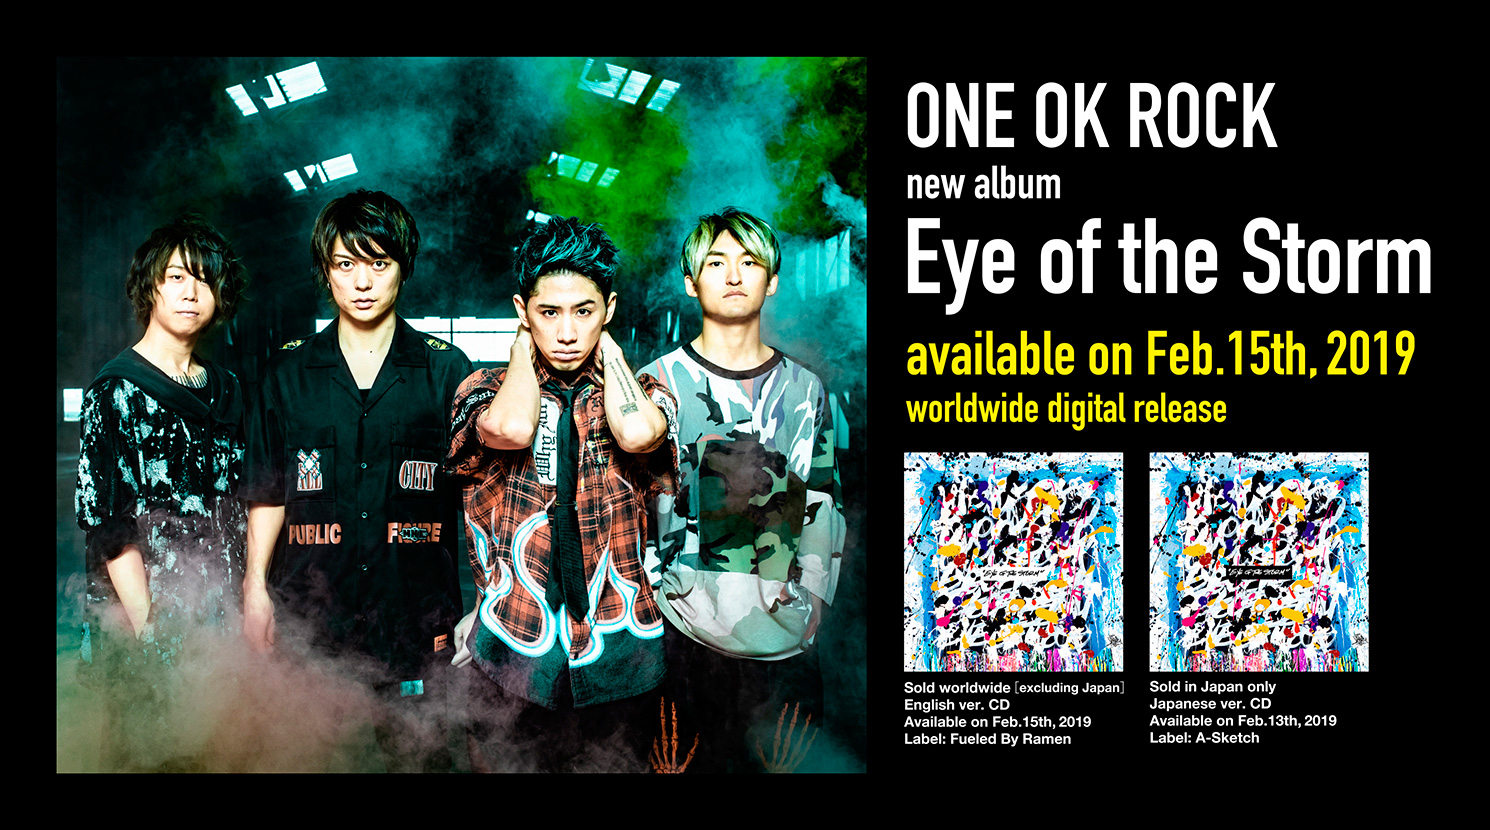 ワンオク最新アルバム「Eye Of The Storm」発売決定【ONE OK ROCK】ファンブログ